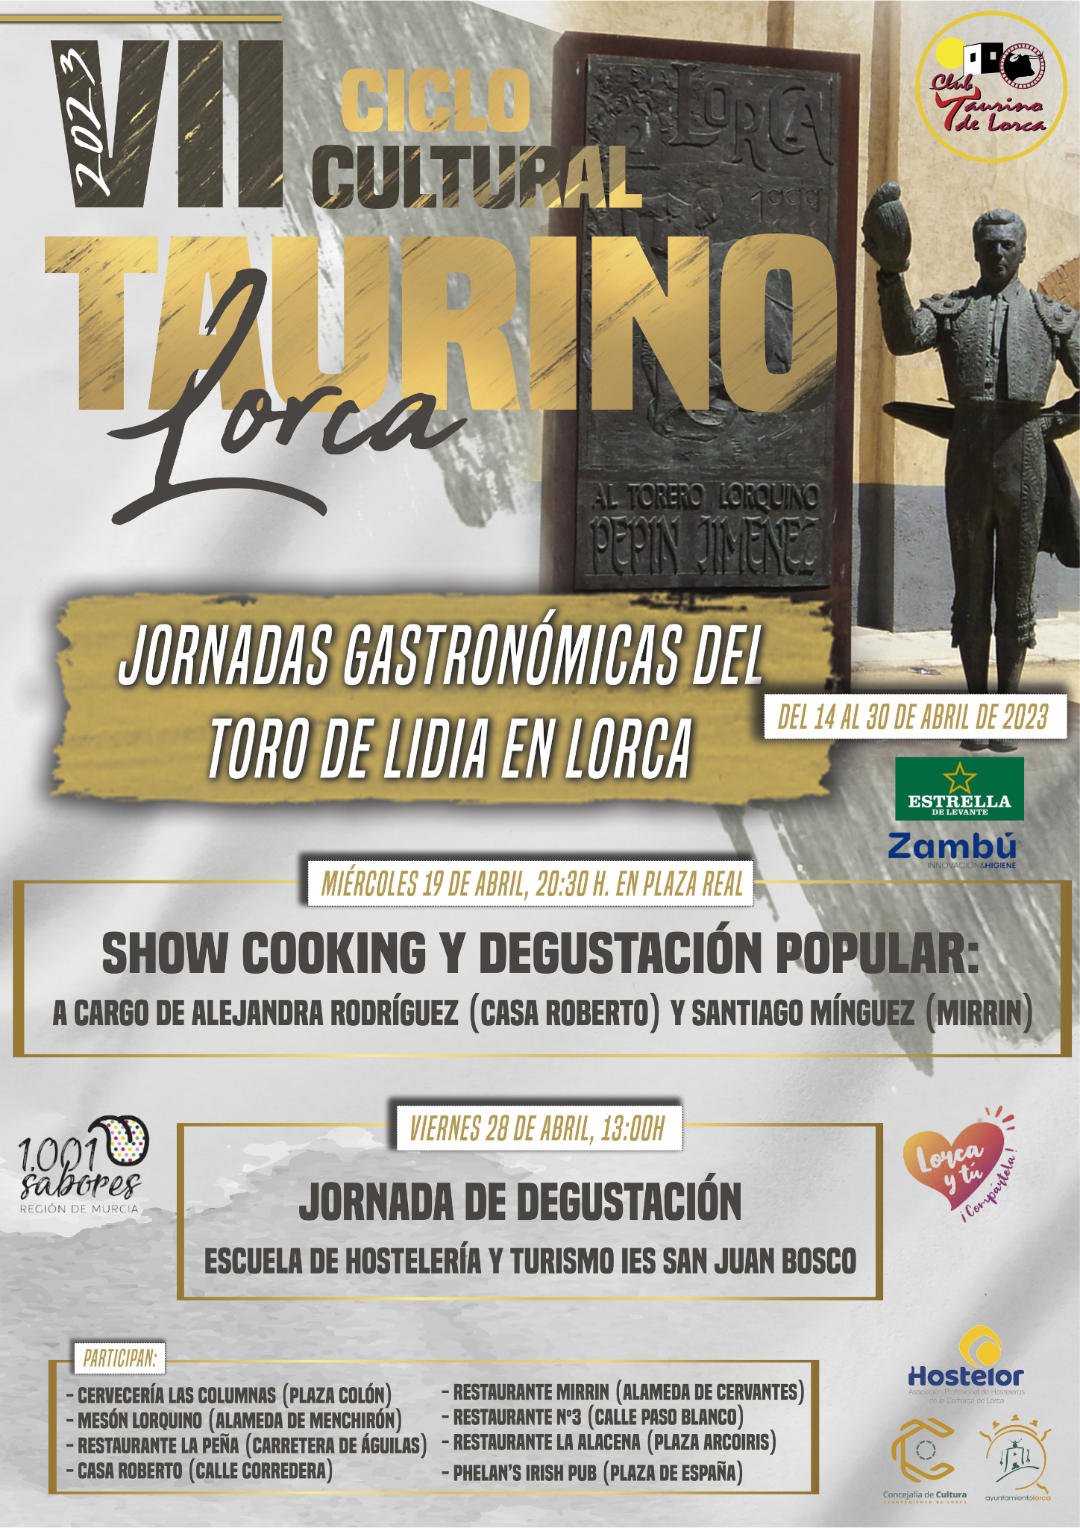 Hostelor y el Club Taurino de Lorca organizan las Jornadas Gastronómicas del toro de lidia desde el próximo viernes 14 al 30 de abril